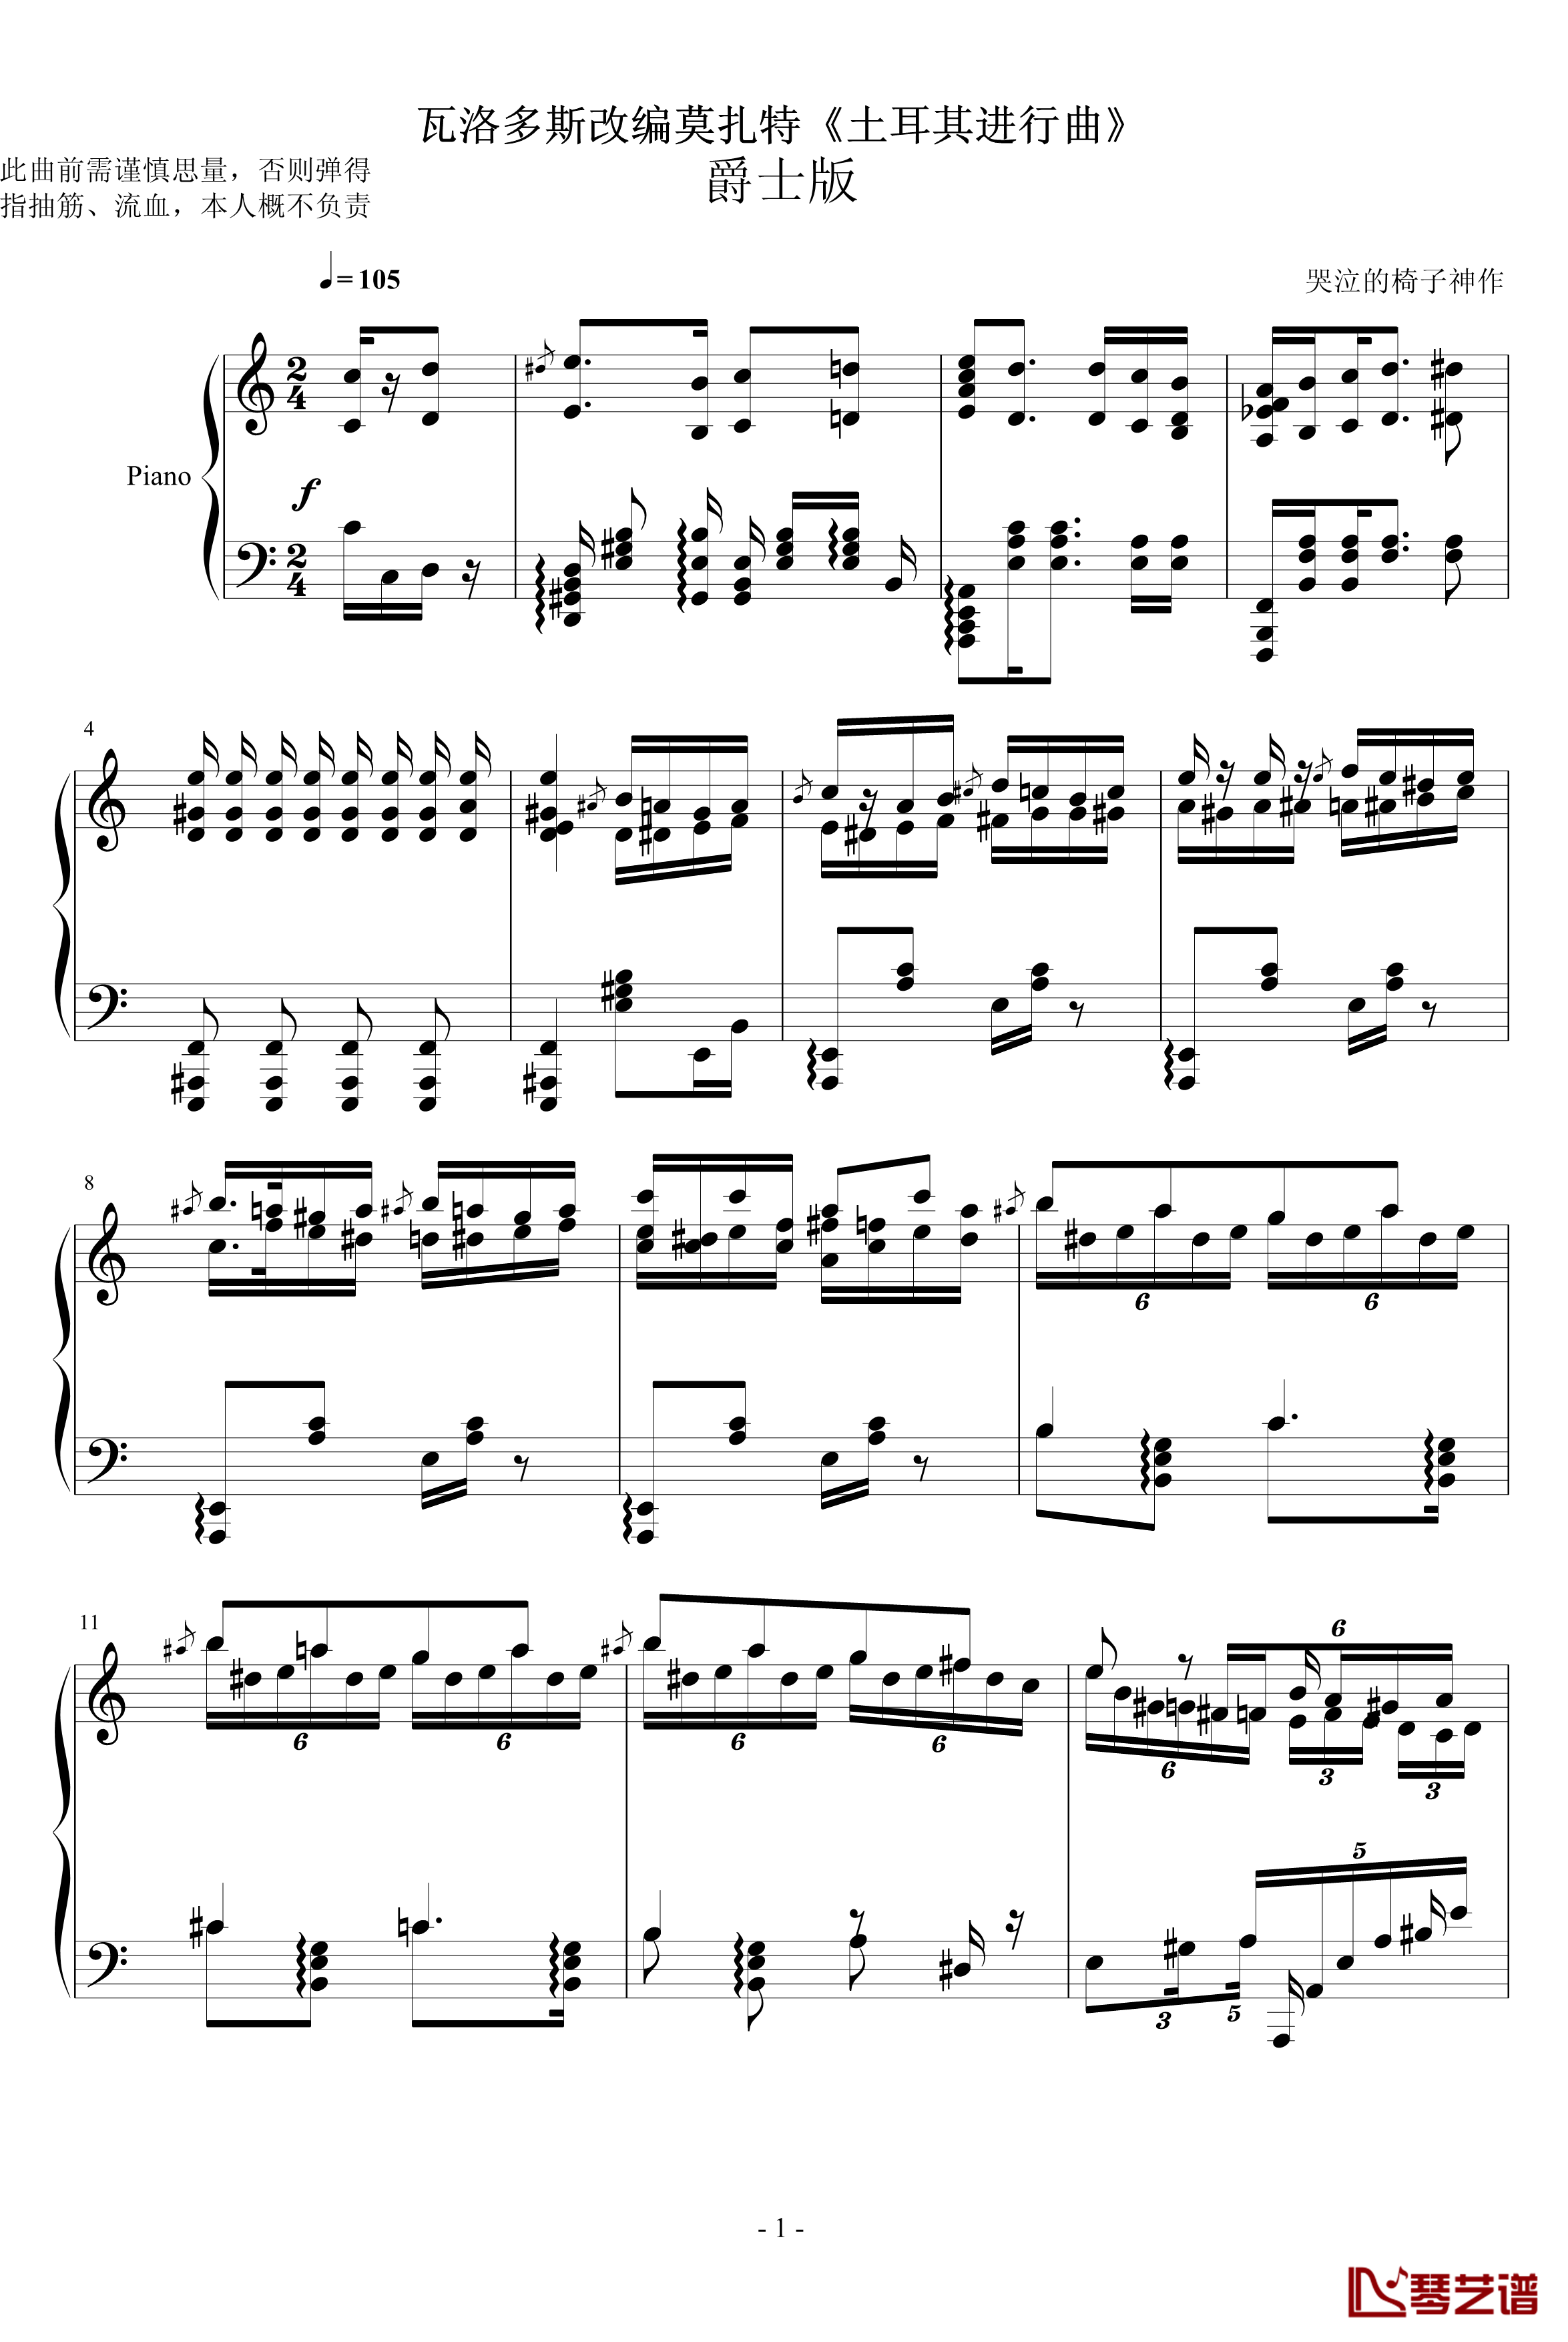 瓦洛多斯土耳其钢琴谱-爵士版1